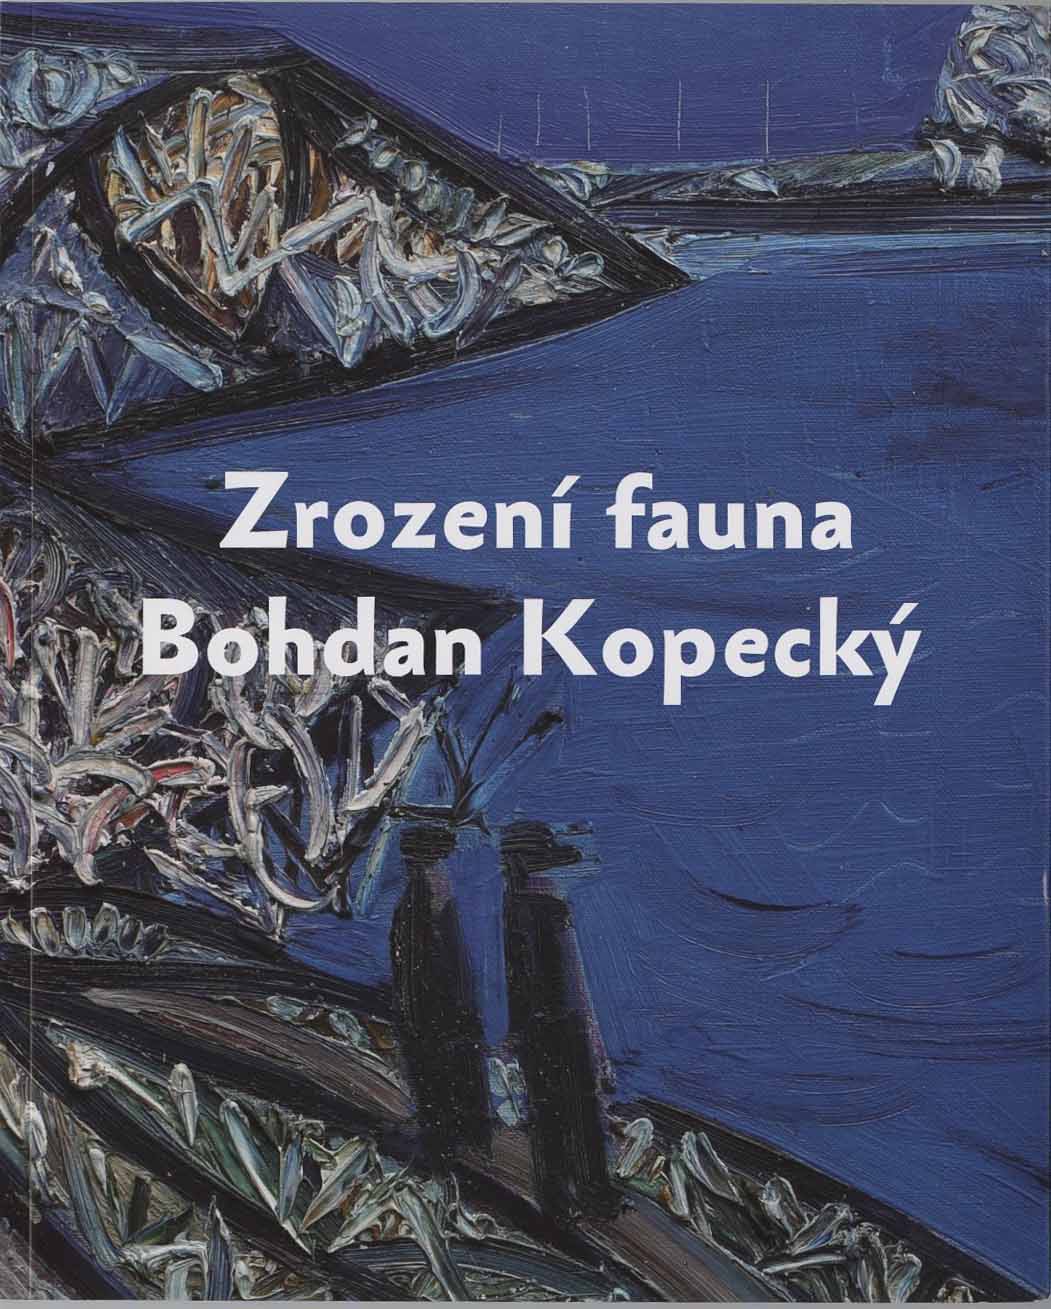 Zrození fauna - Bohdan Kopecký